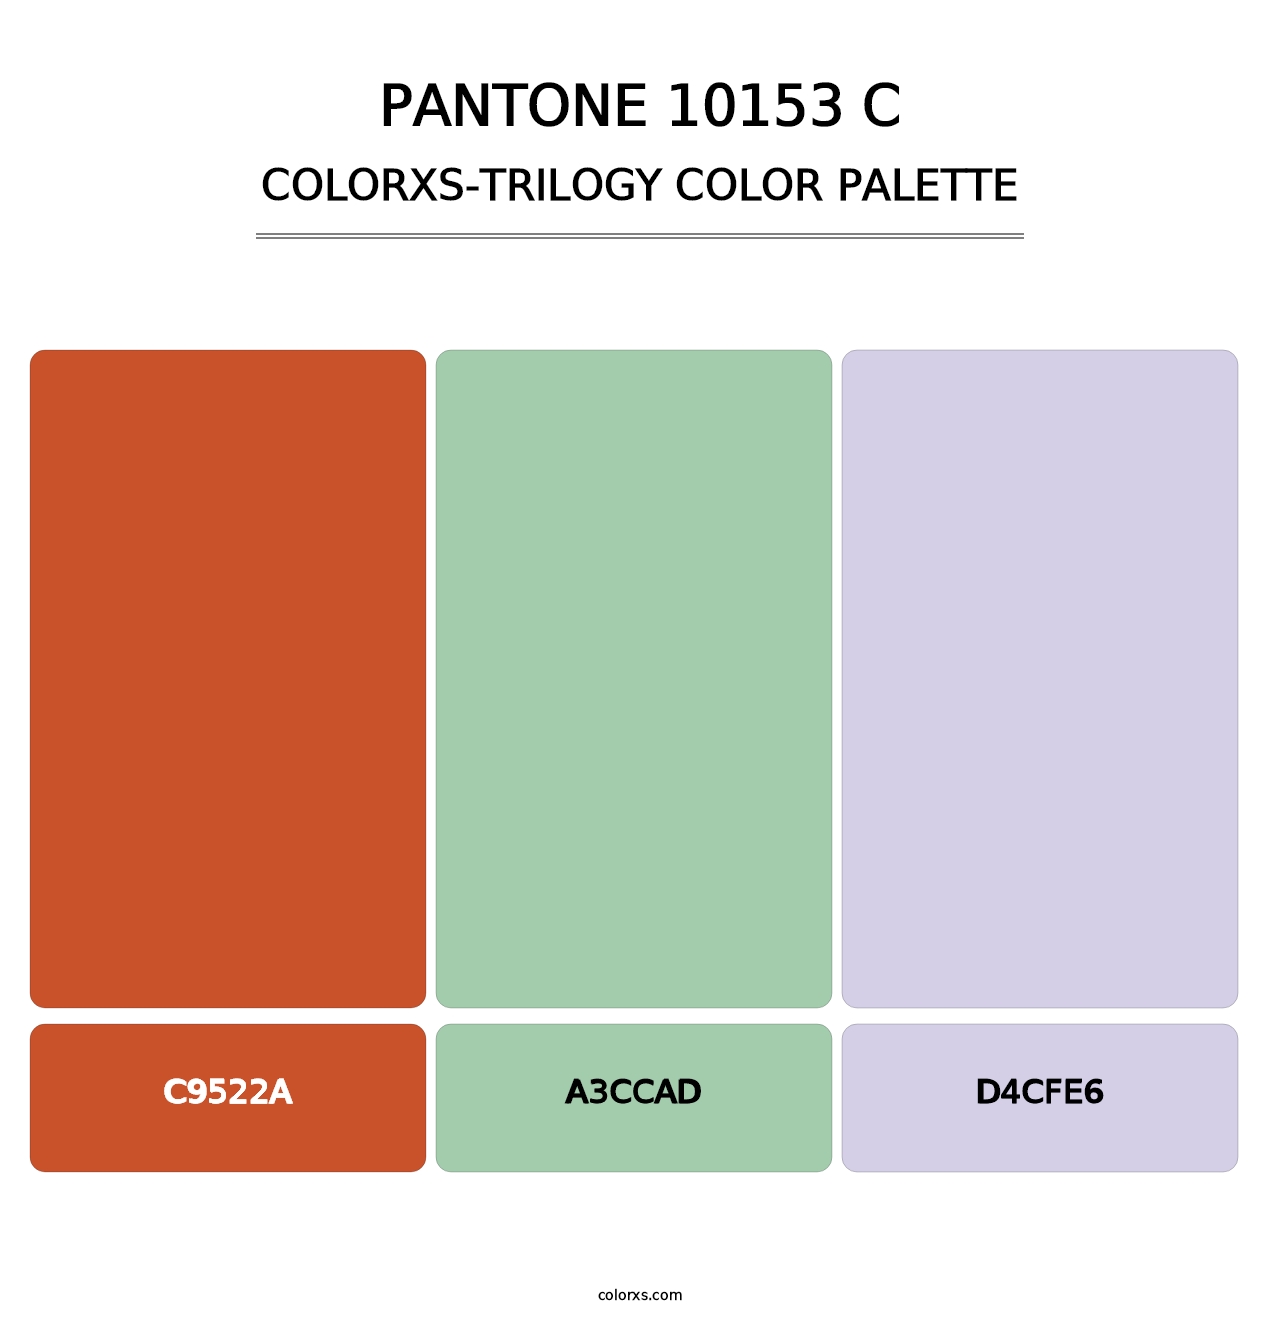 PANTONE 10153 C - Colorxs Trilogy Palette